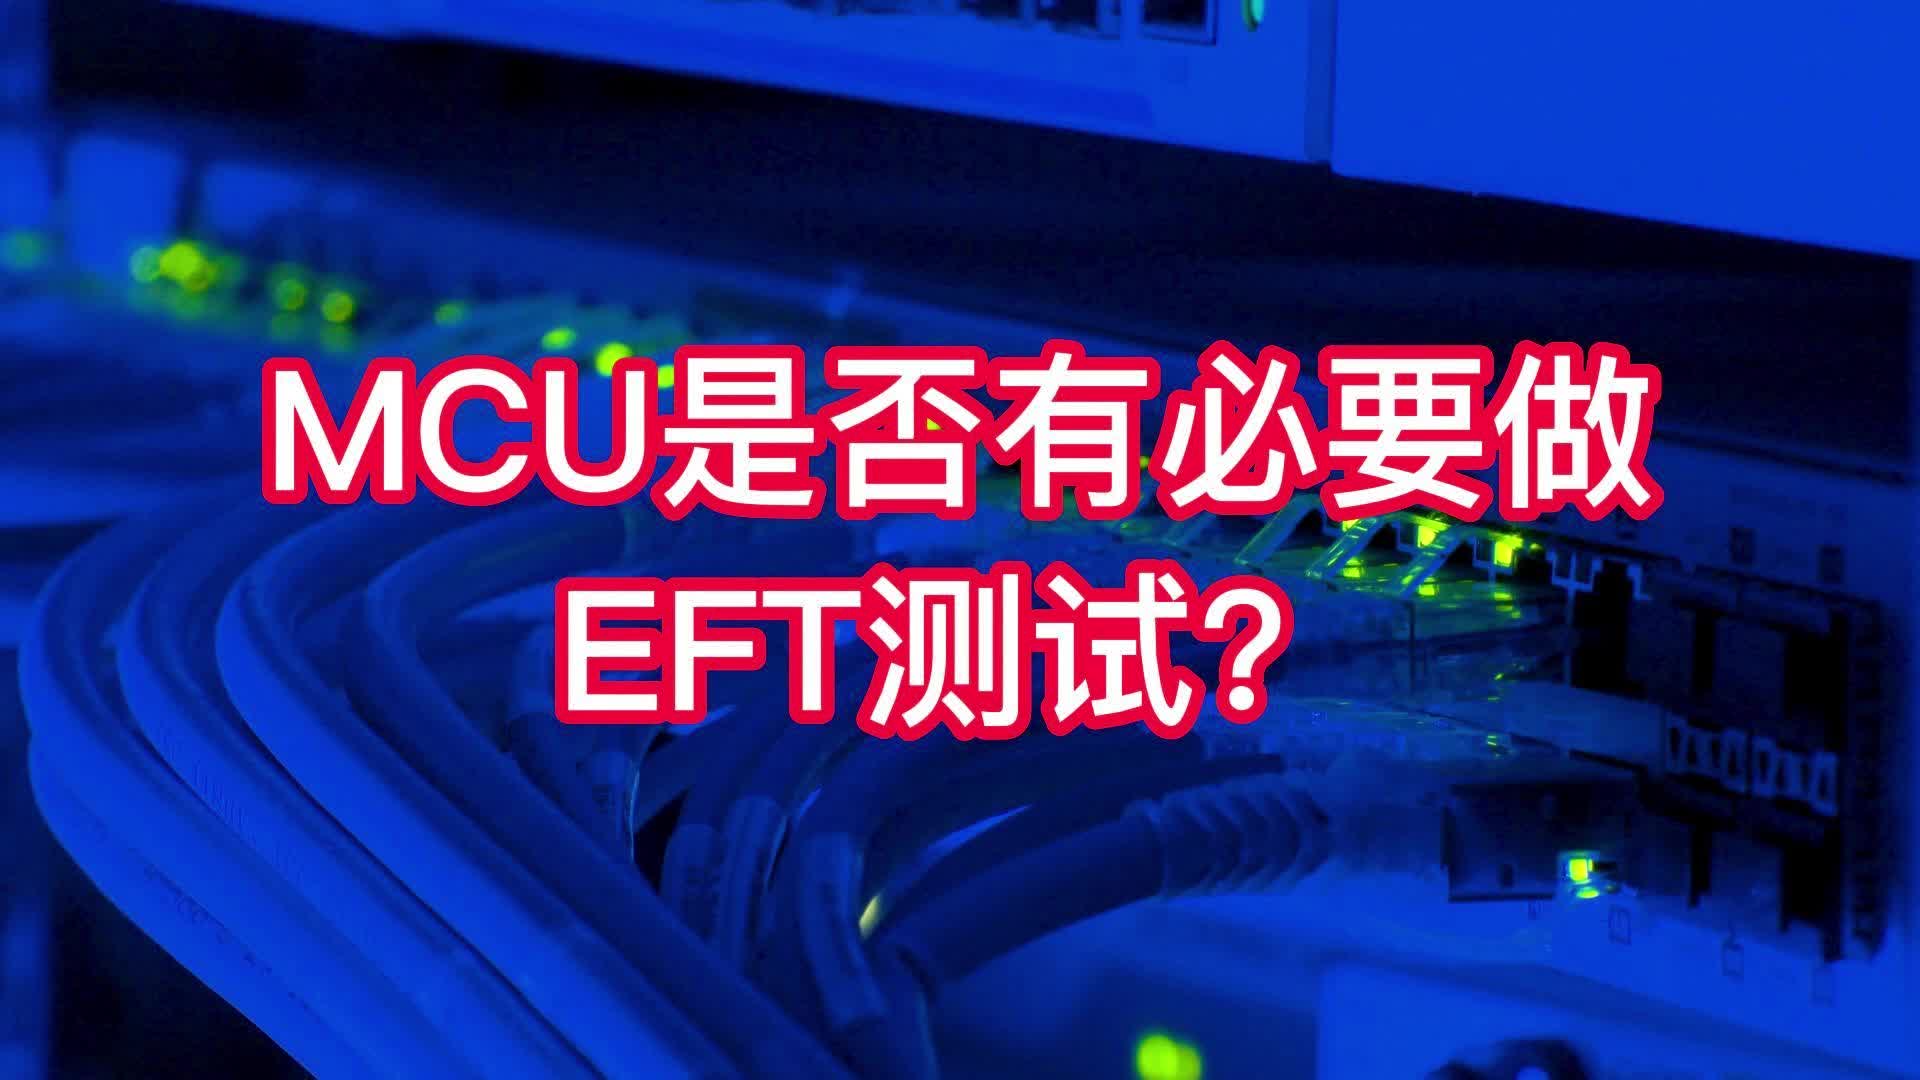 MCU是否有必要做EFT測試？#嵌入式開發 #電路設計 #電子工程師 @